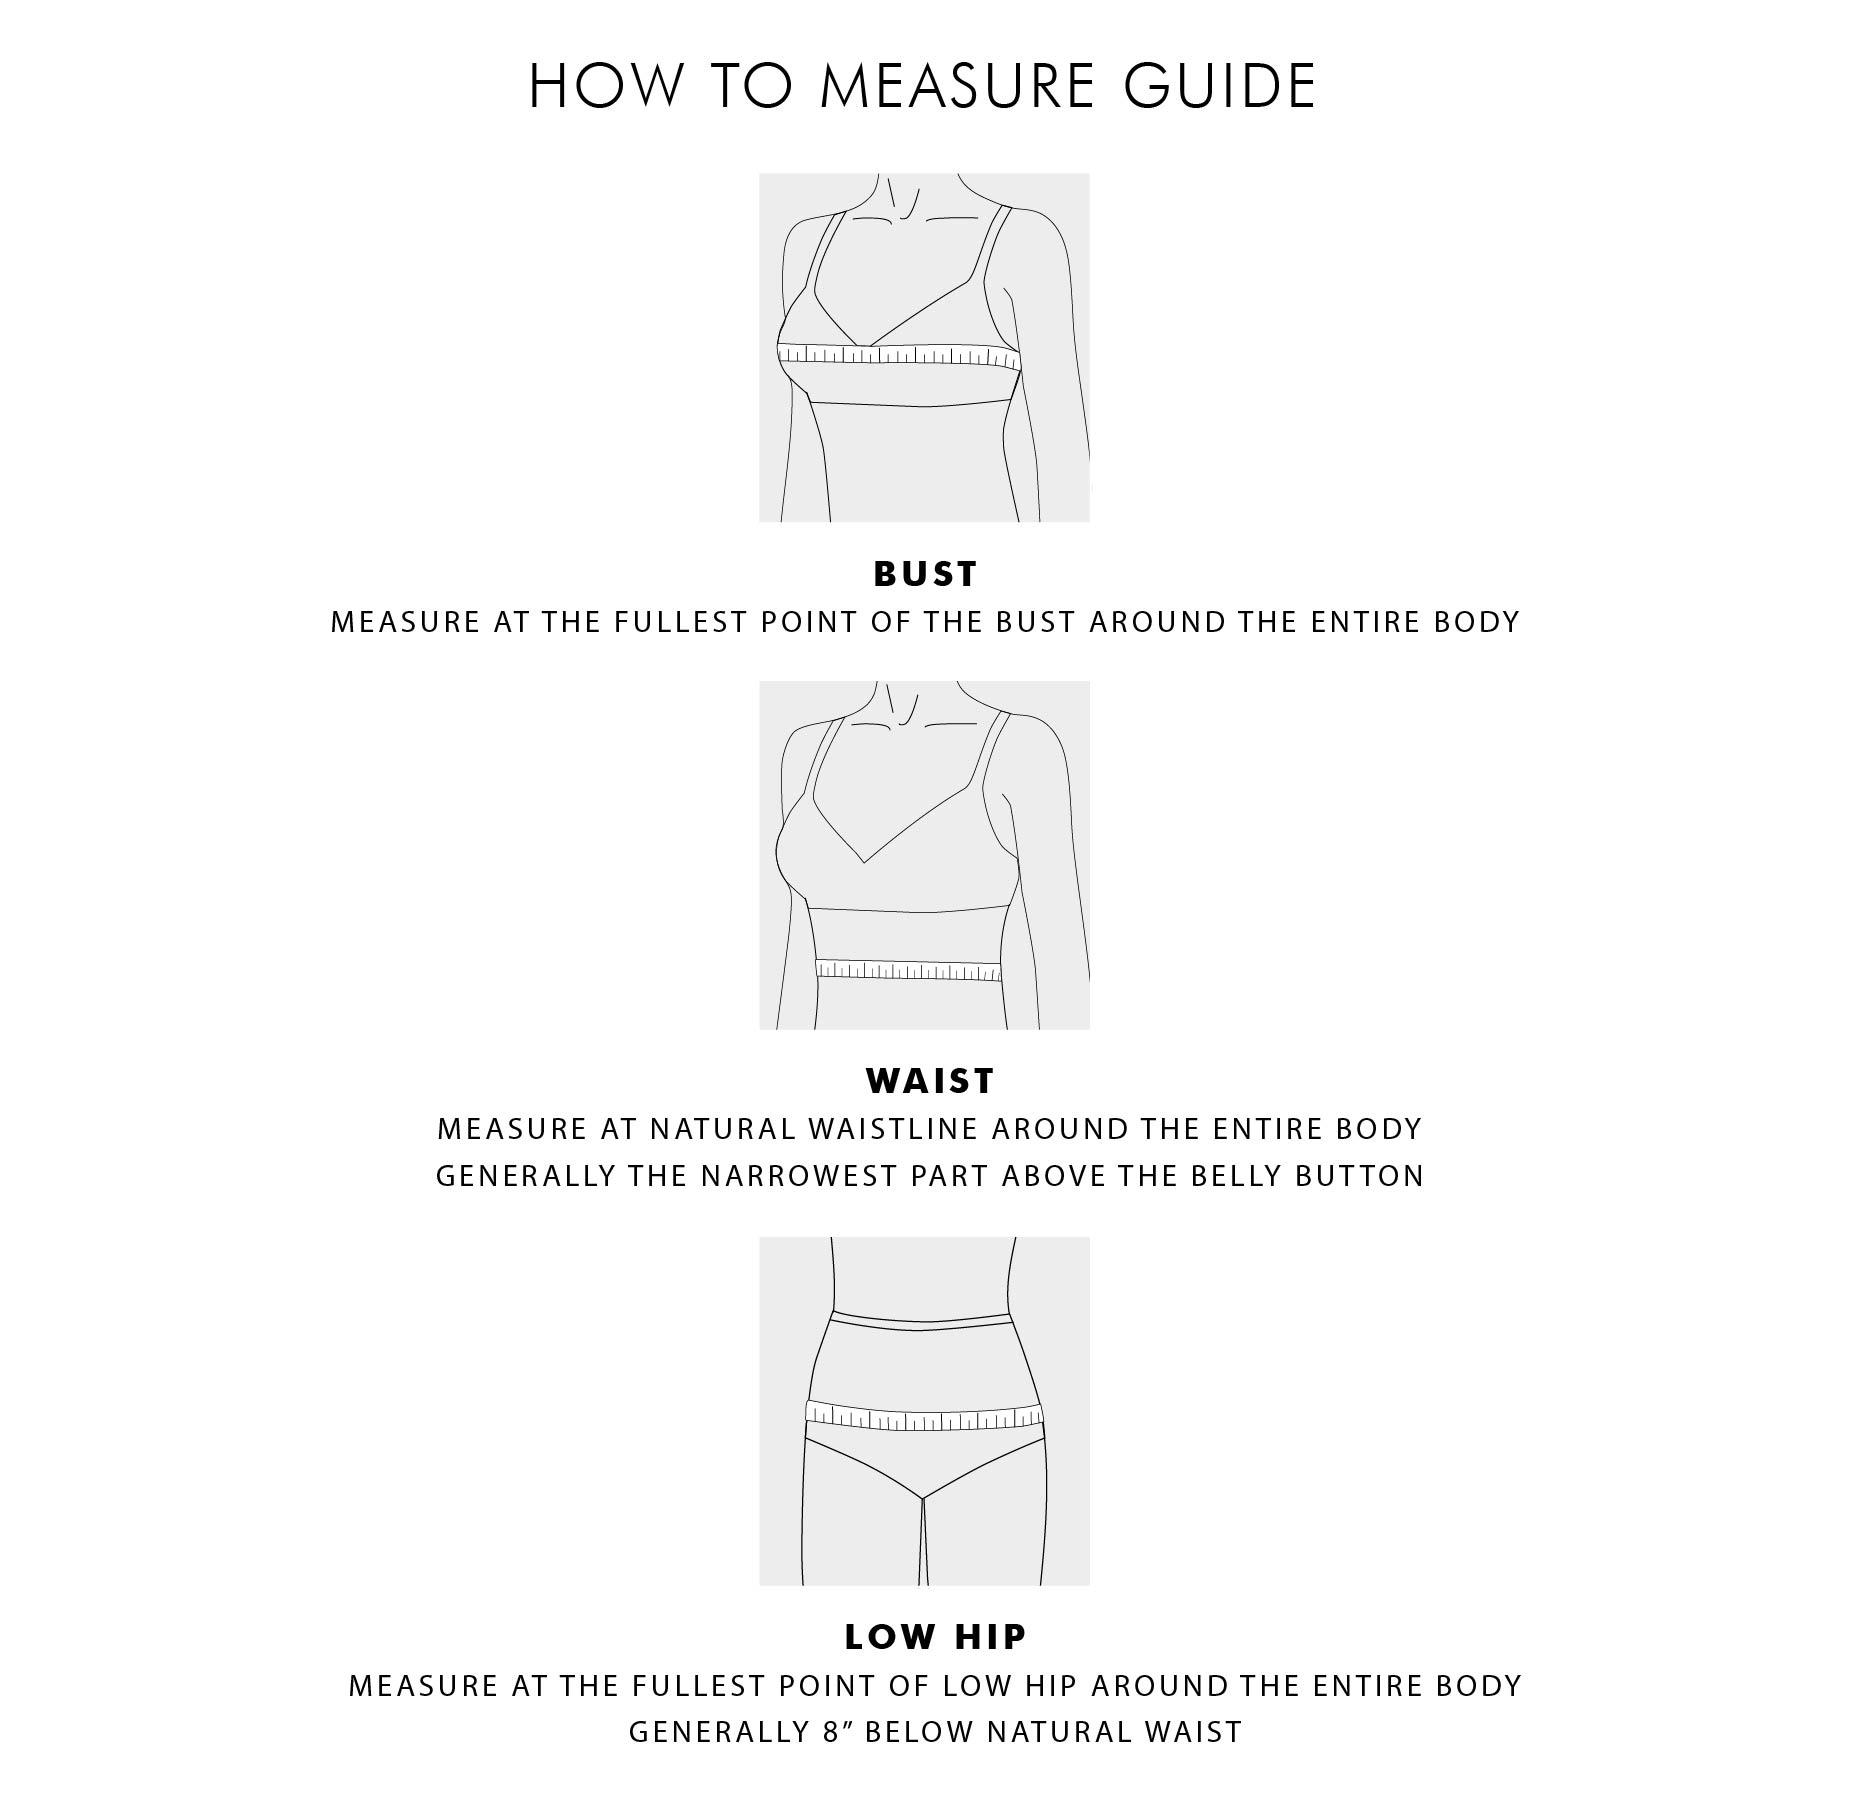 Pajama Measurement Chart